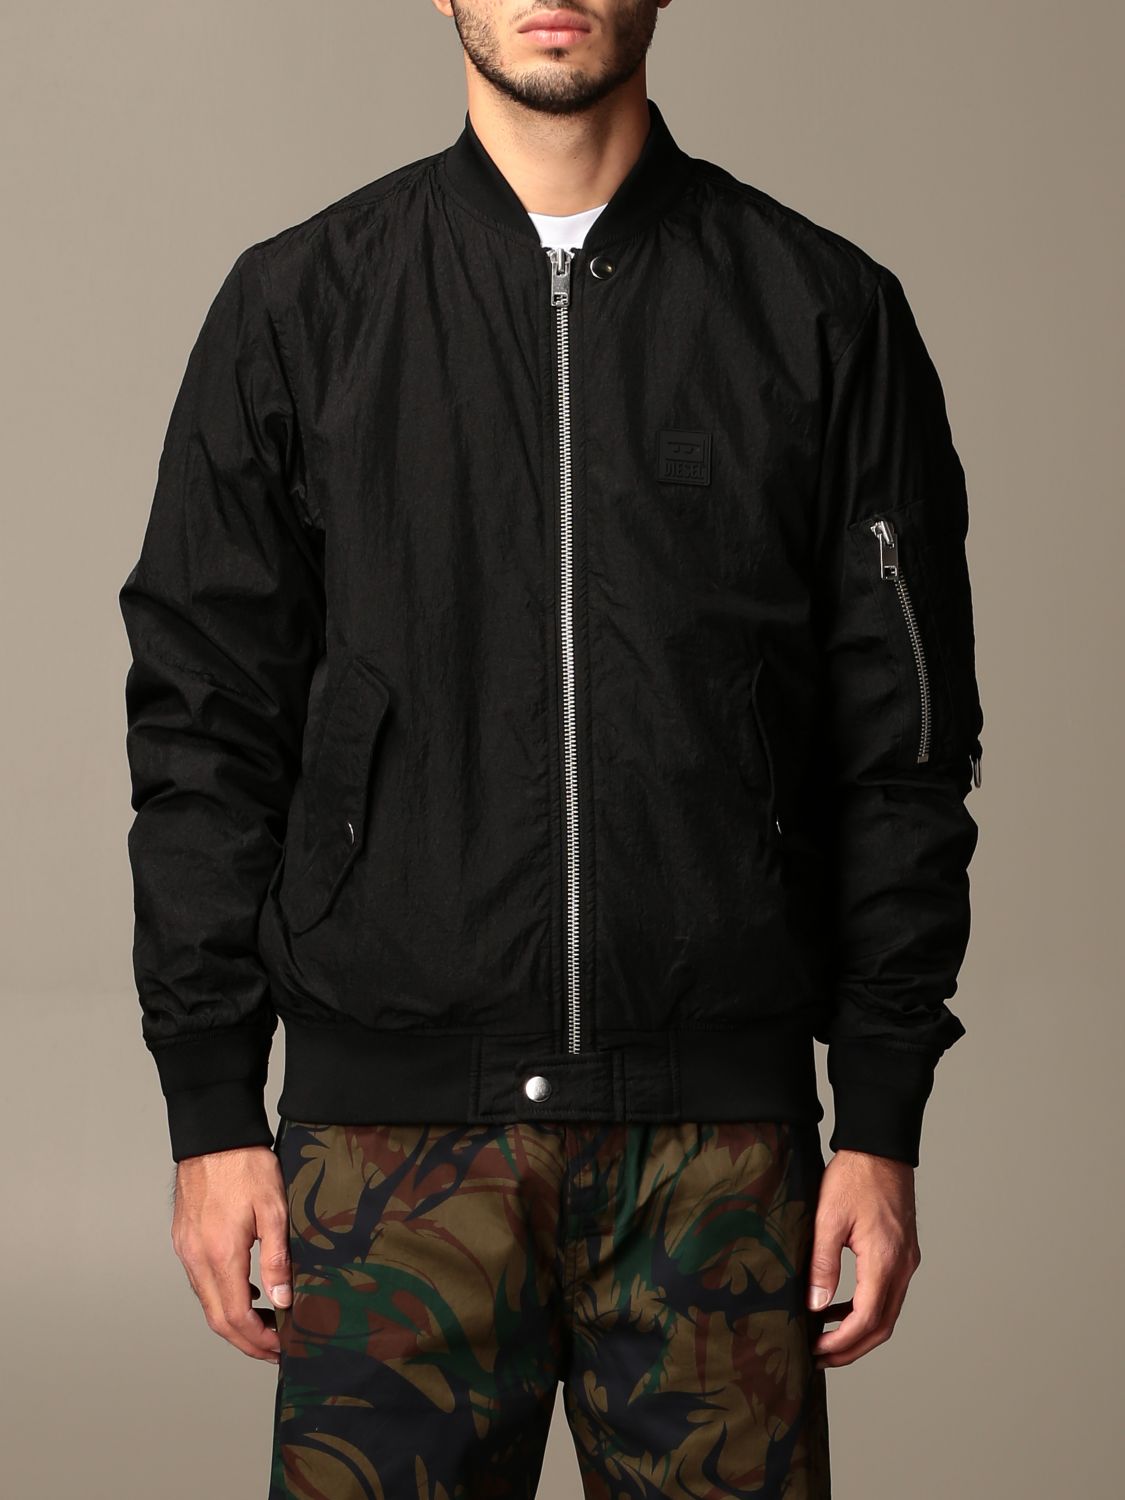 DIESEL: jacket in nylon zip - Black | Diesel blazer A00208 online on GIGLIO.COM